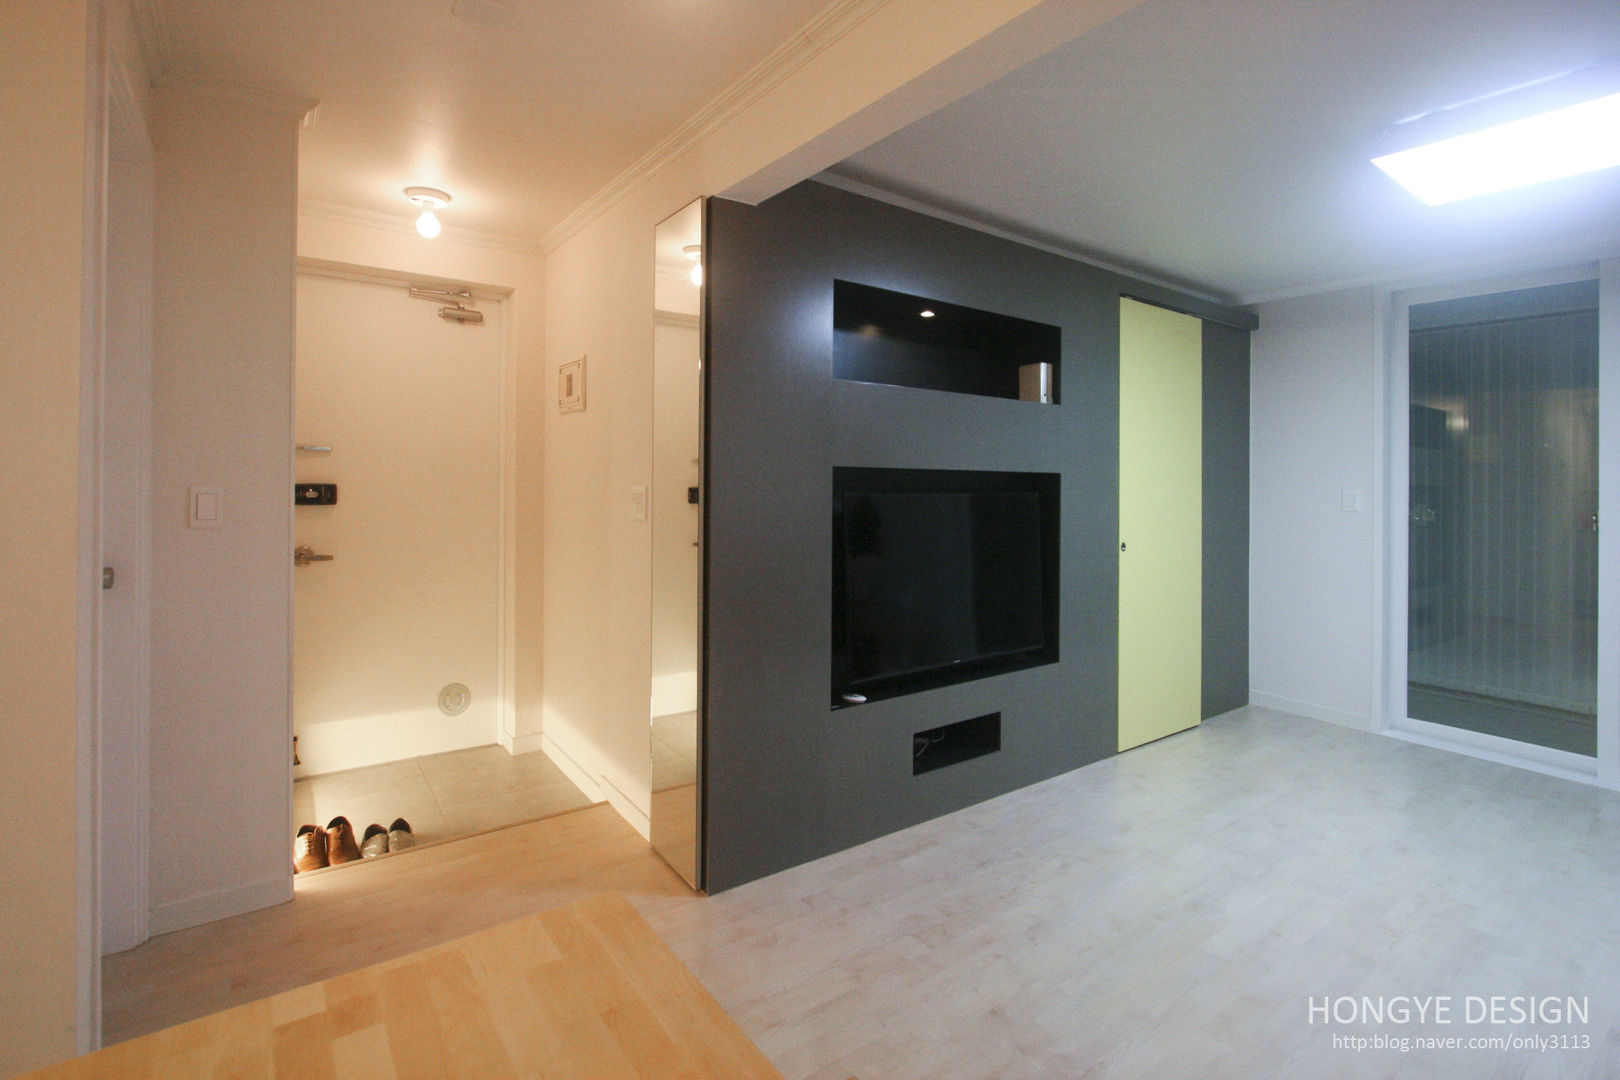 내추럴한 느낌의 16평 신혼집, 홍예디자인 홍예디자인 Living room